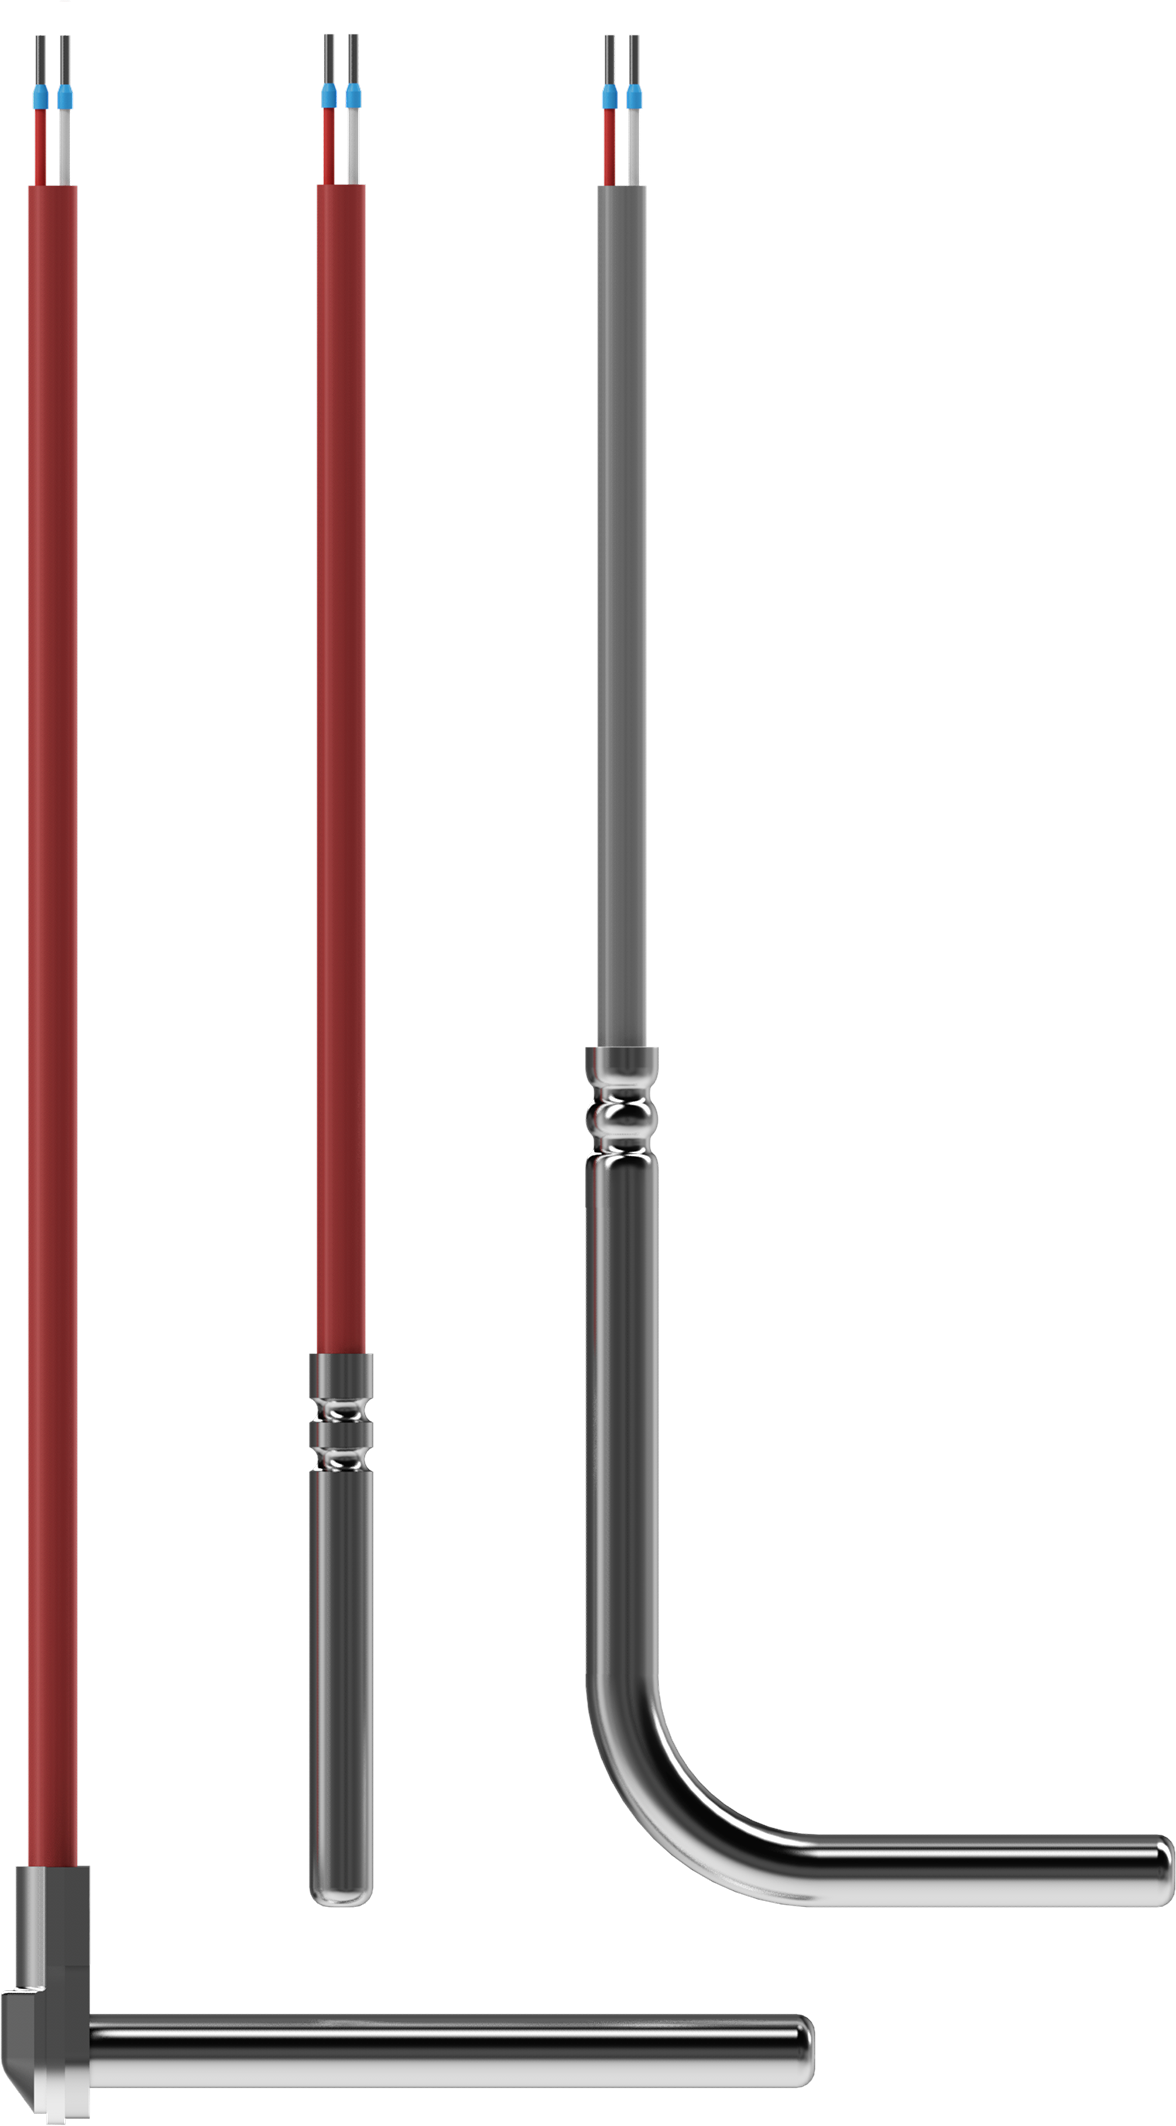 JUMO Einsteck-Widerstandsthermometer mit spiralisierter Anschlussleitung, einteiliges Schutzrohr aus Edelstahl